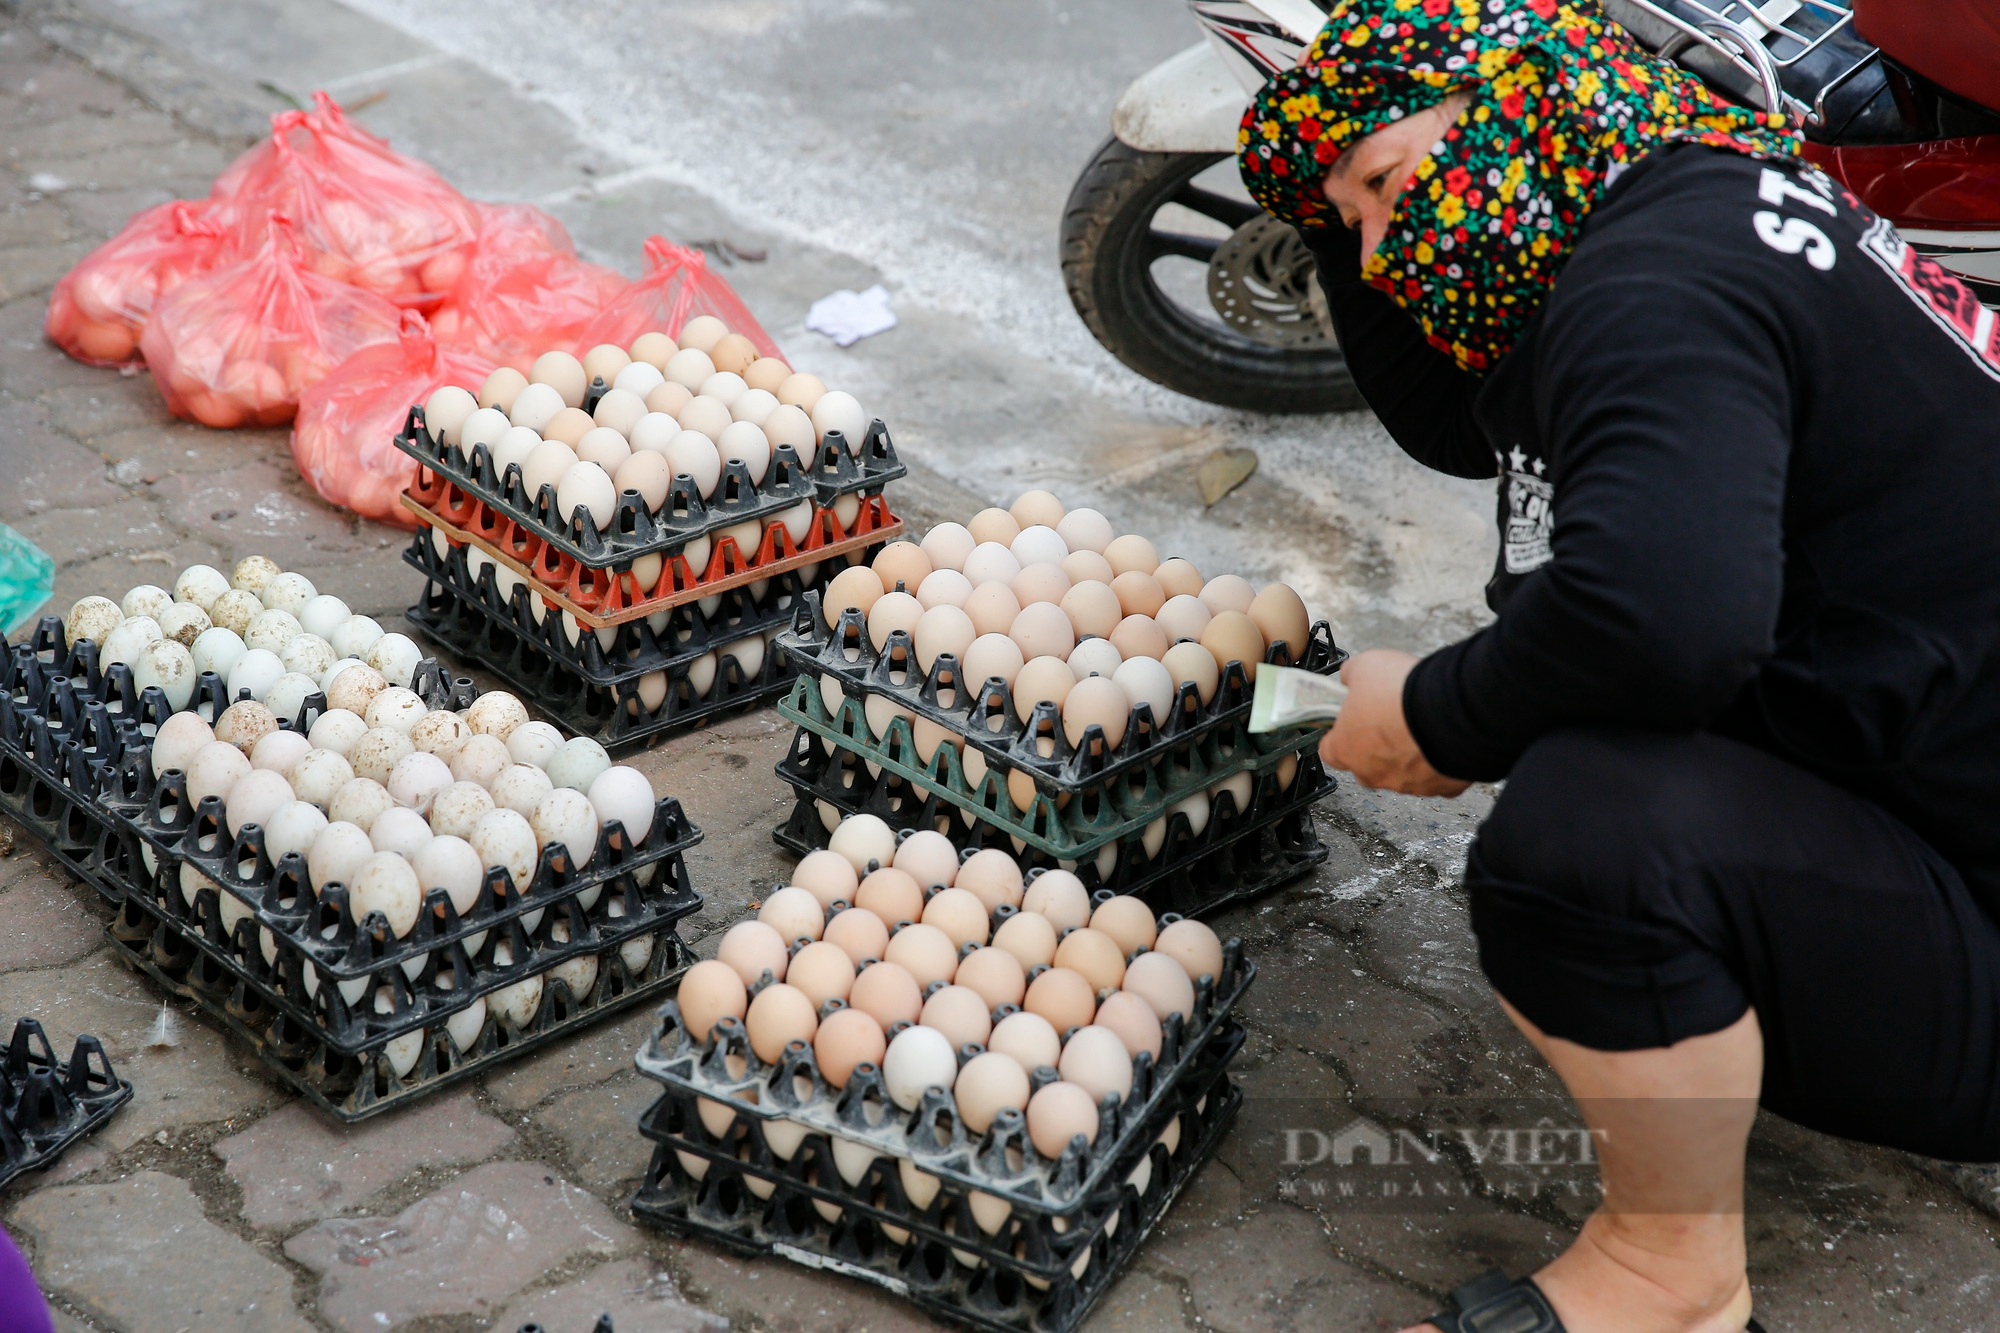 Xuất hiện nhiều điểm giải cứu trứng gà giá 65.000 đồng/30 quả tại Hà Nội - Ảnh 9.